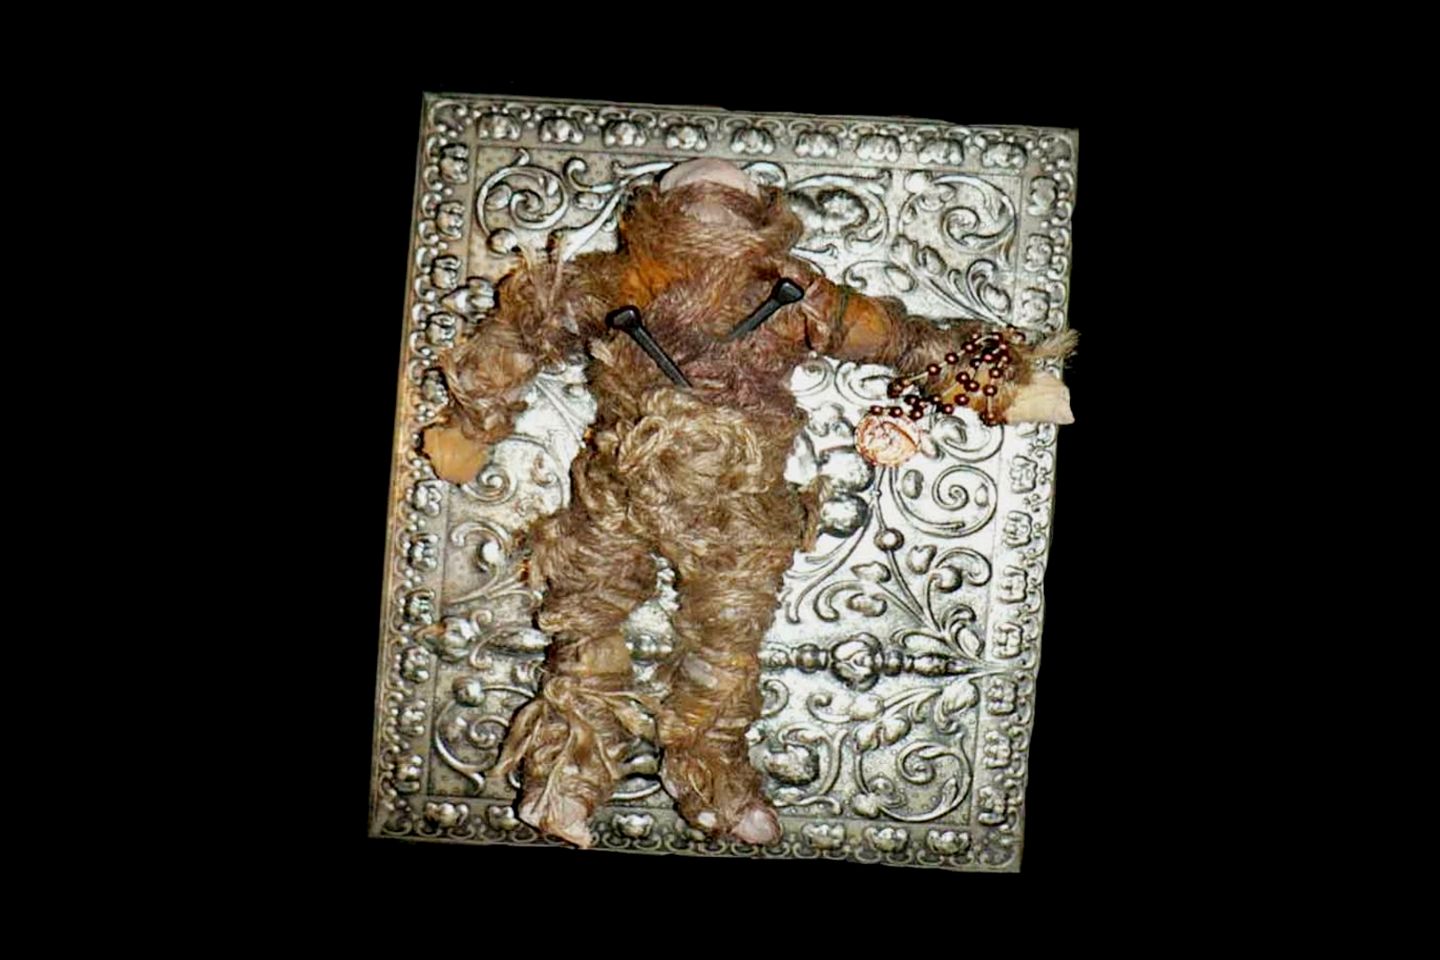 Die Voodoo-Zombie-Puppe